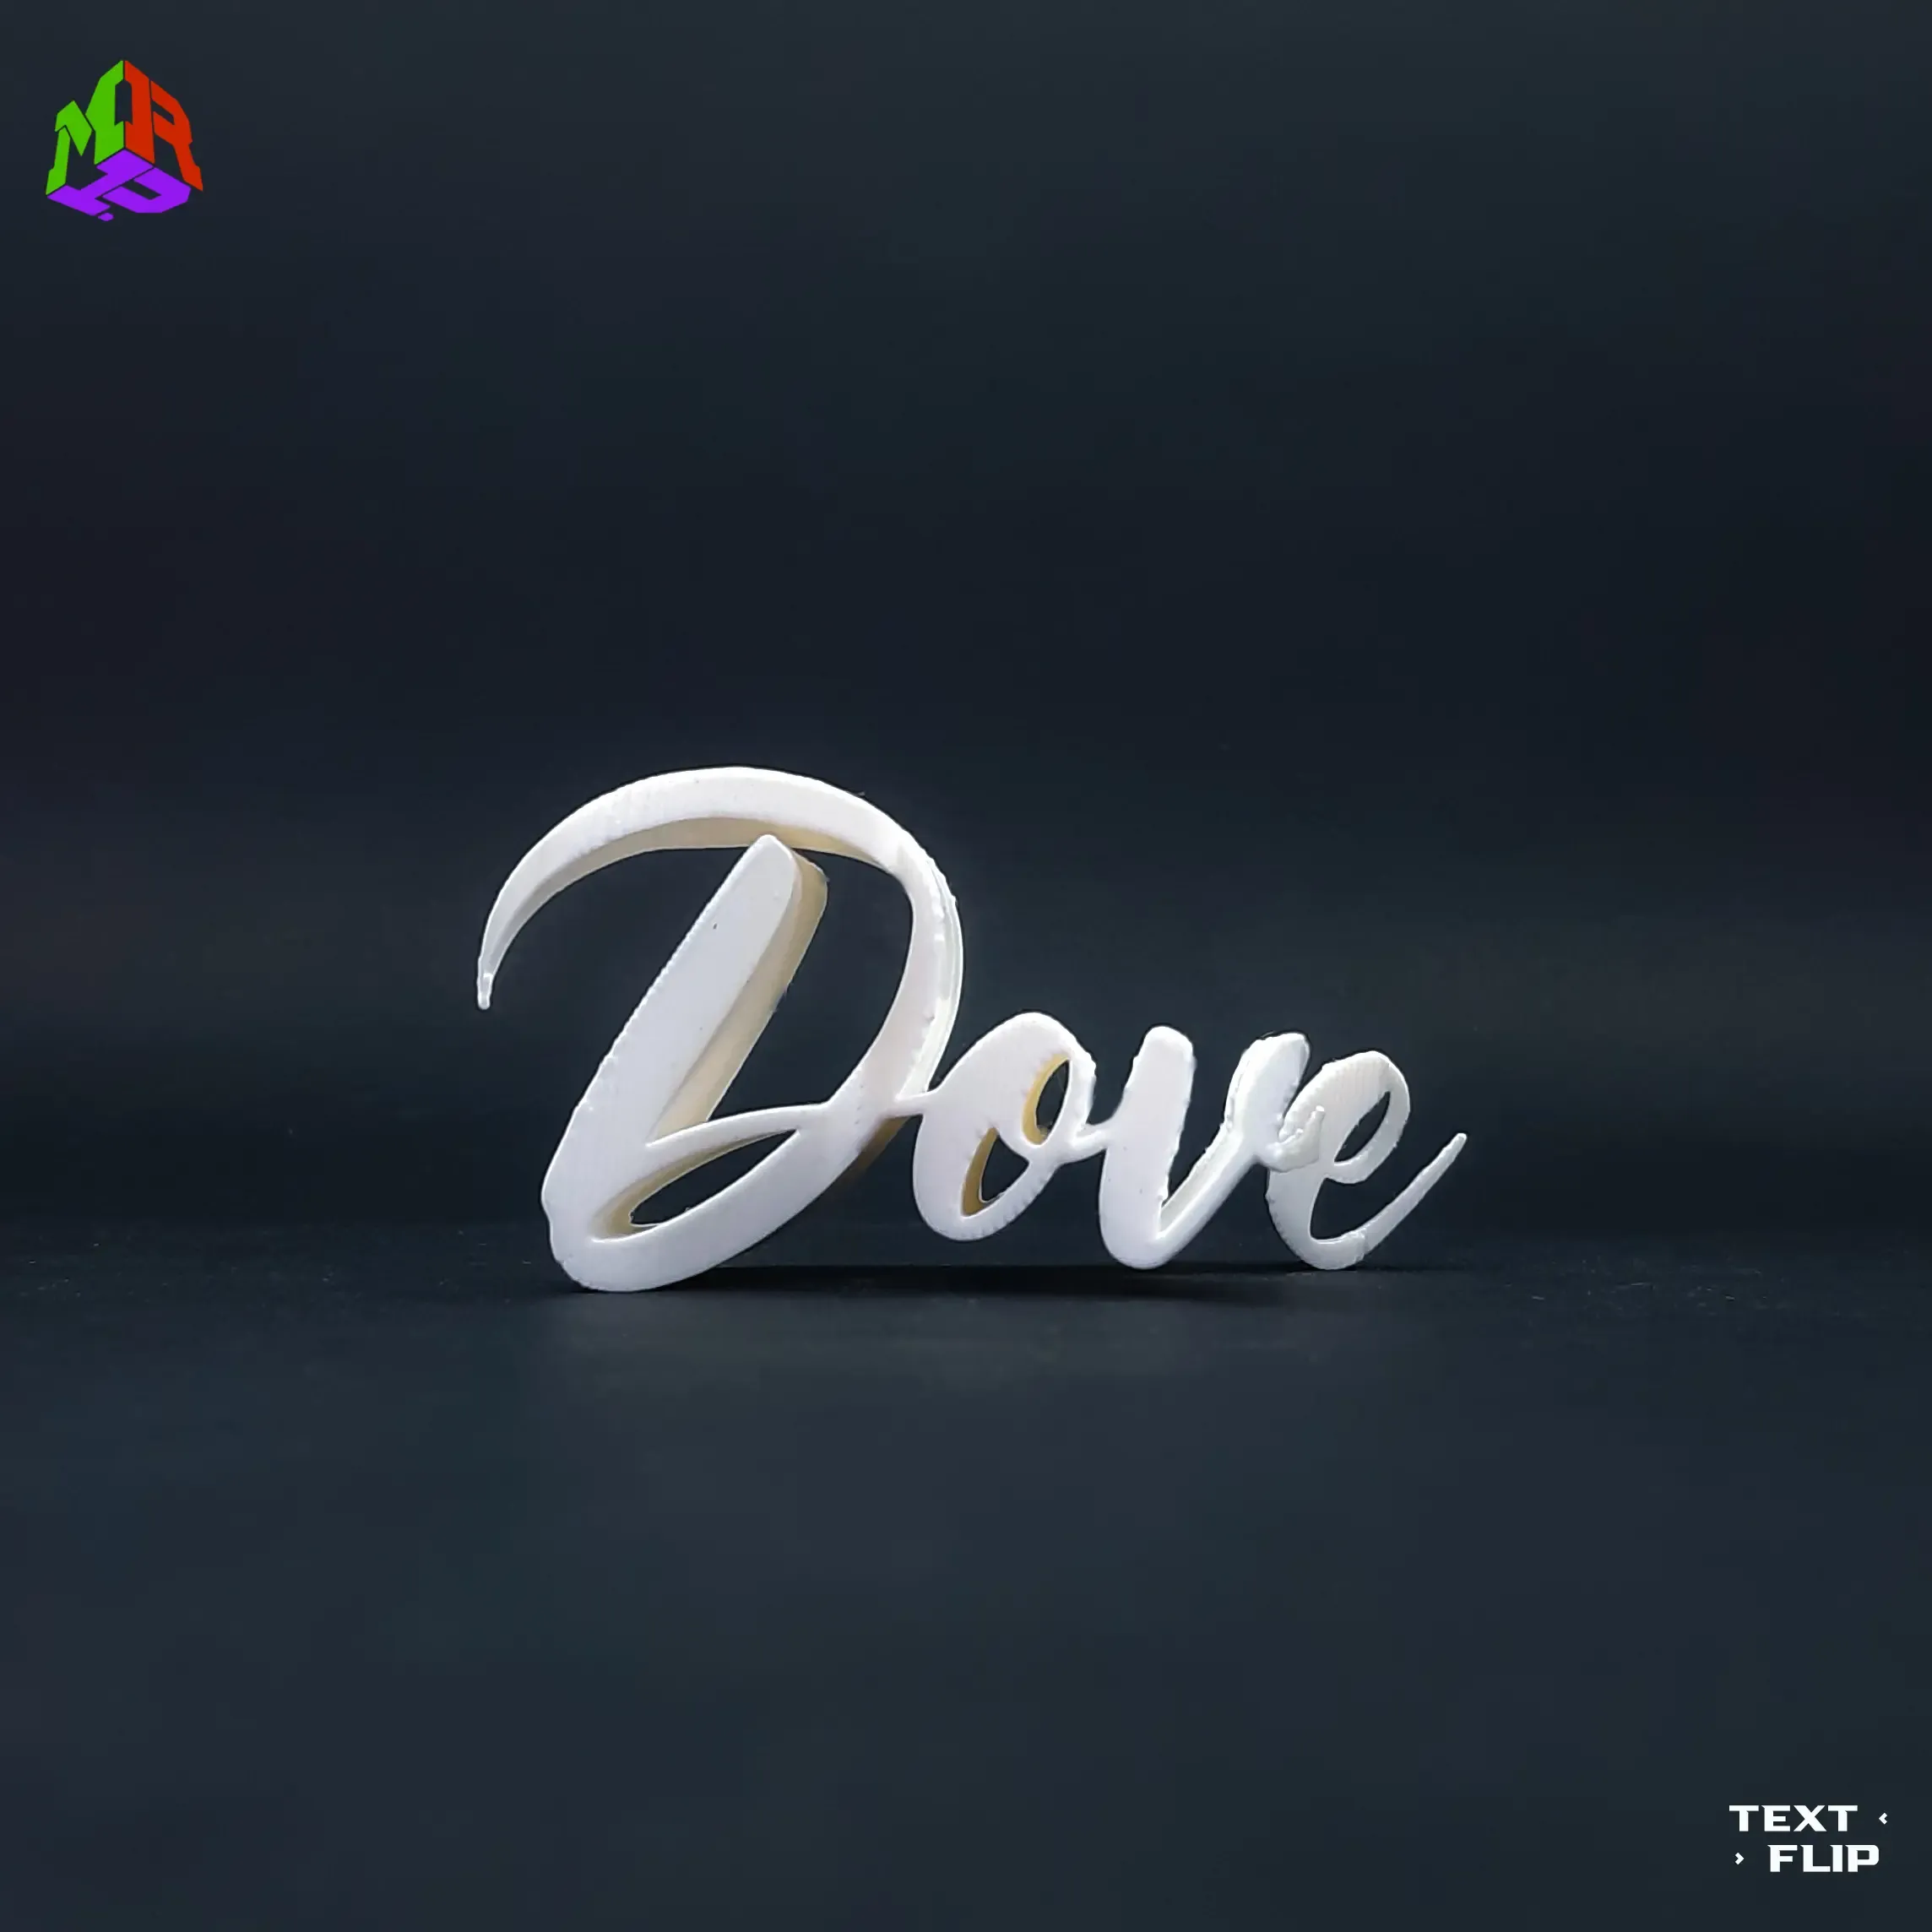 Text Flip - Dove